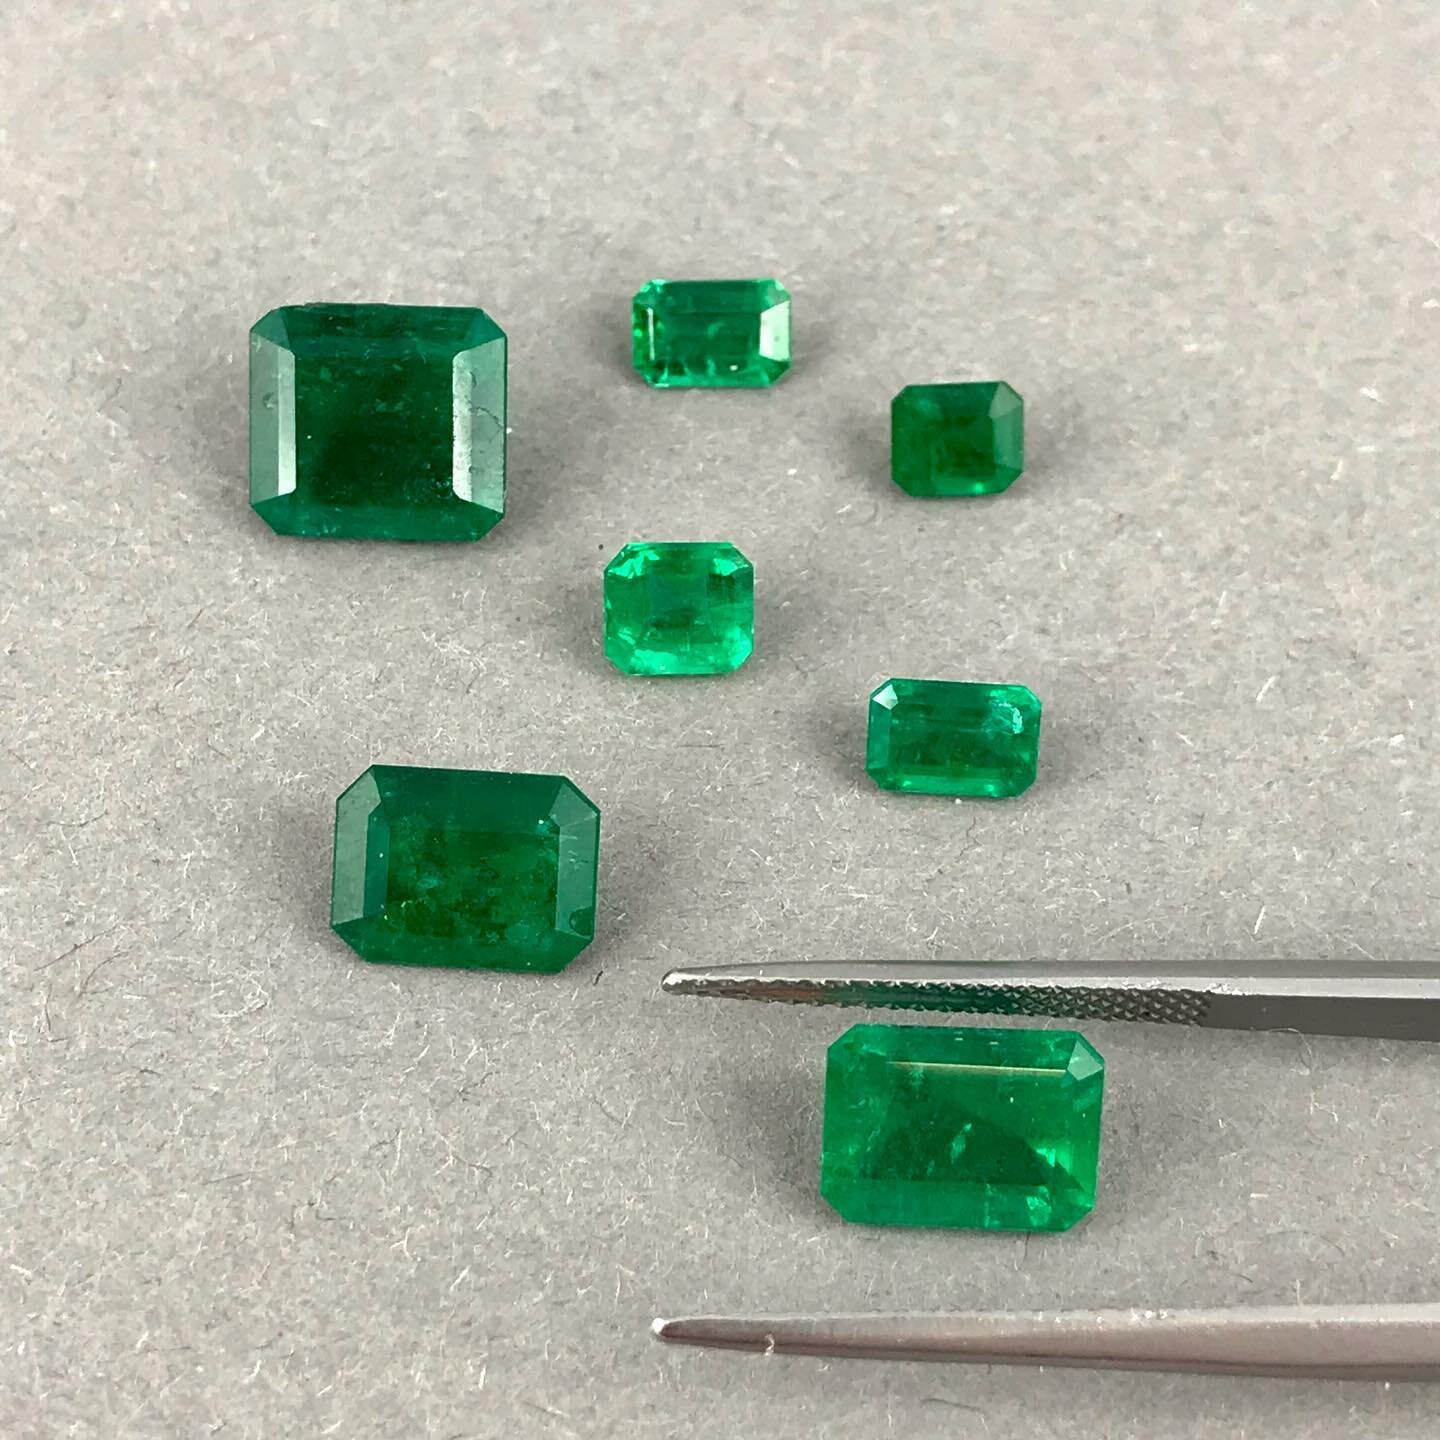 La fameuse taille &eacute;meraude qui permet de faire ressortir la couleur de la pierre gr&acirc;ce &agrave; sa large table. 

#emeraude #cut #gems #green #jewelry #emerald #square #bijoux